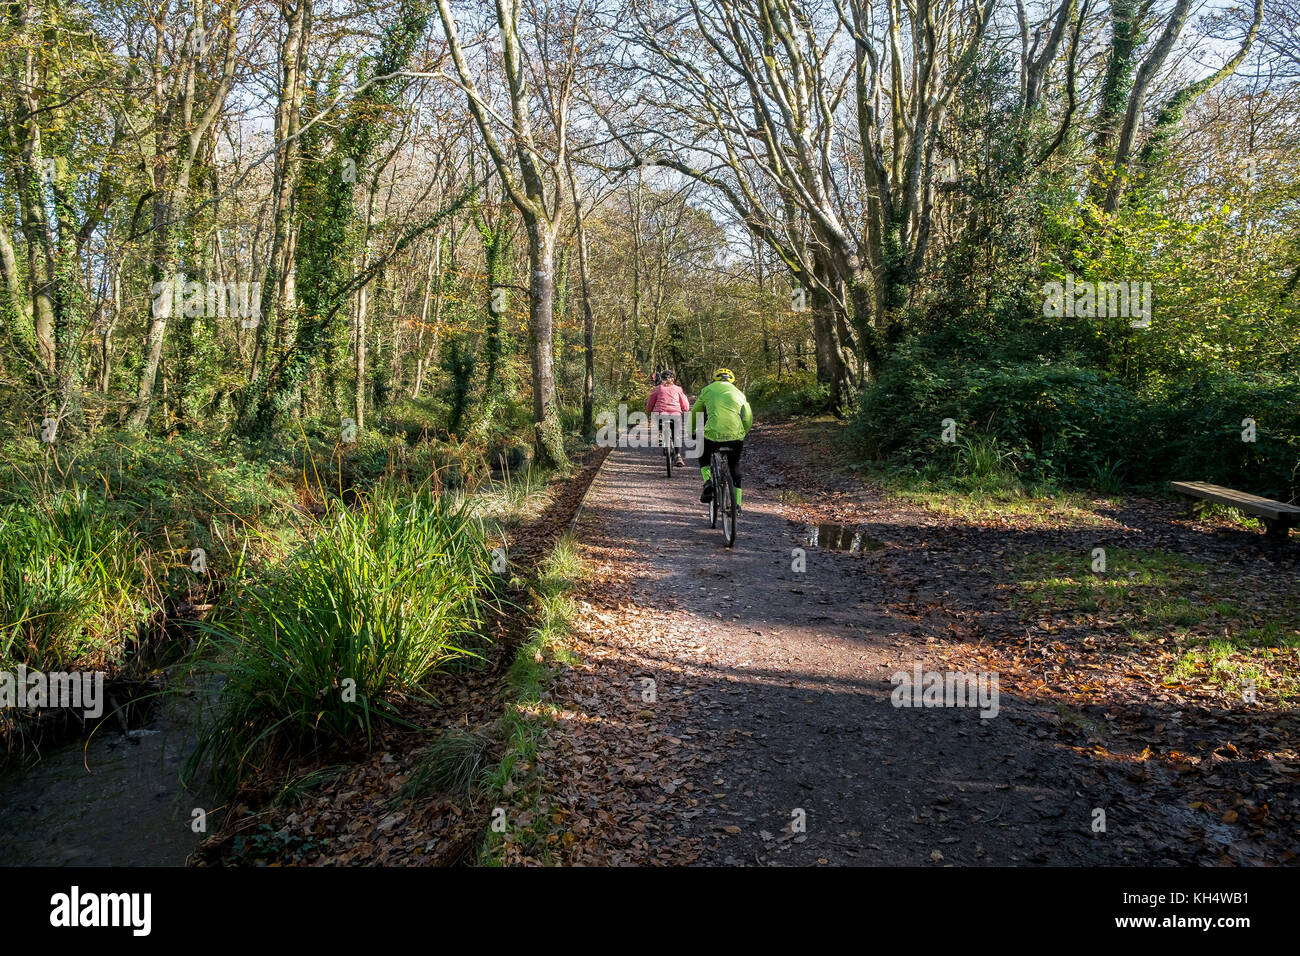 Cyclistes sur une piste dans un parc régional Tehidy de Cornwall au Royaume-Uni. Banque D'Images